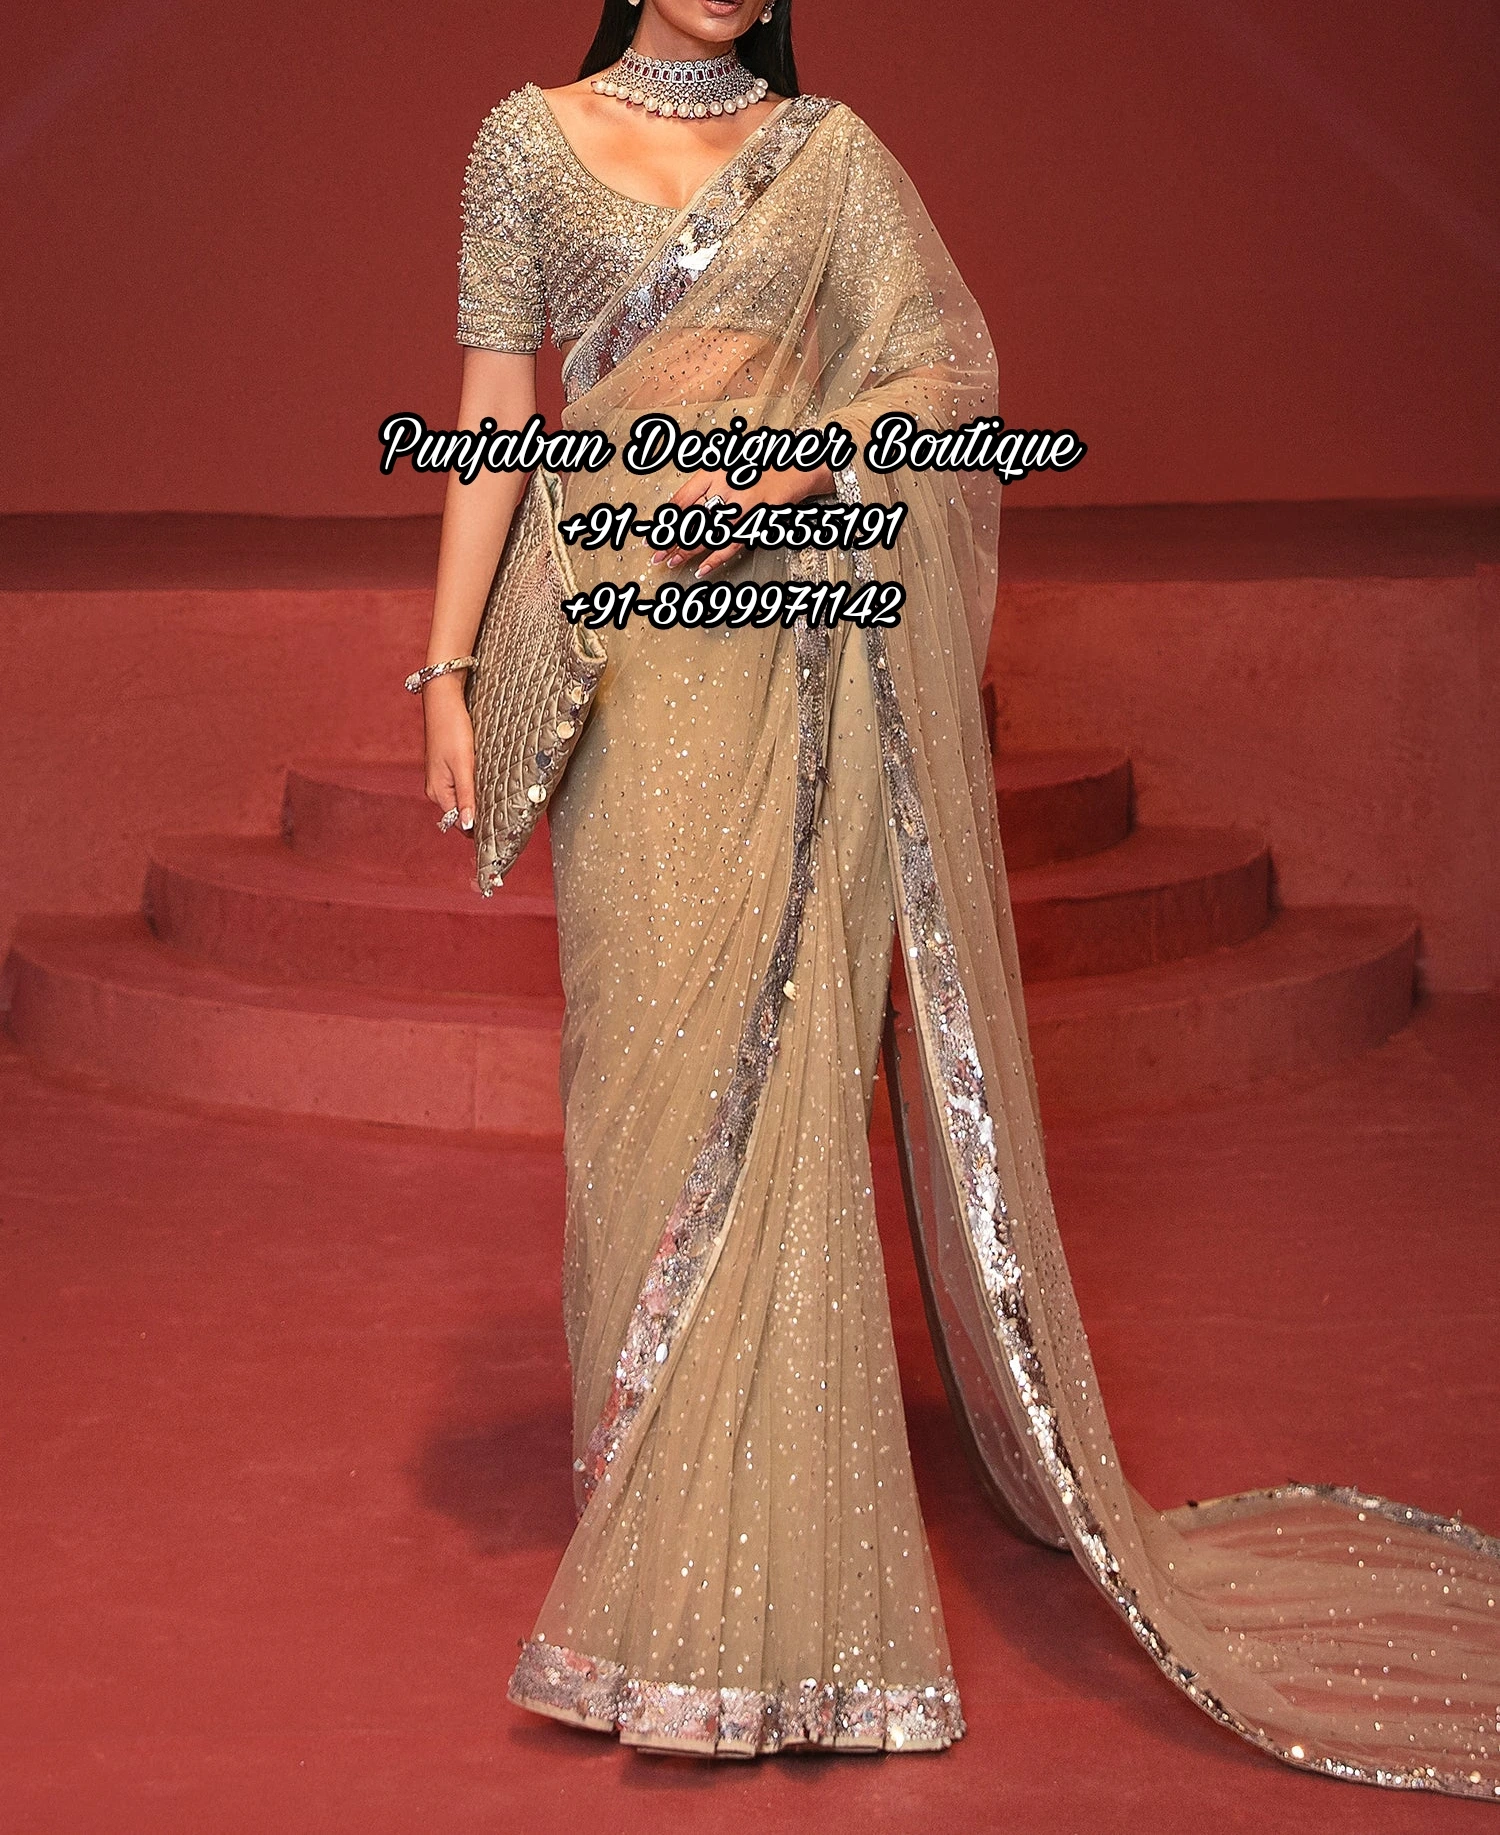 20 Best Saree Blouse Designs For Women | Makeupandbeauty.com